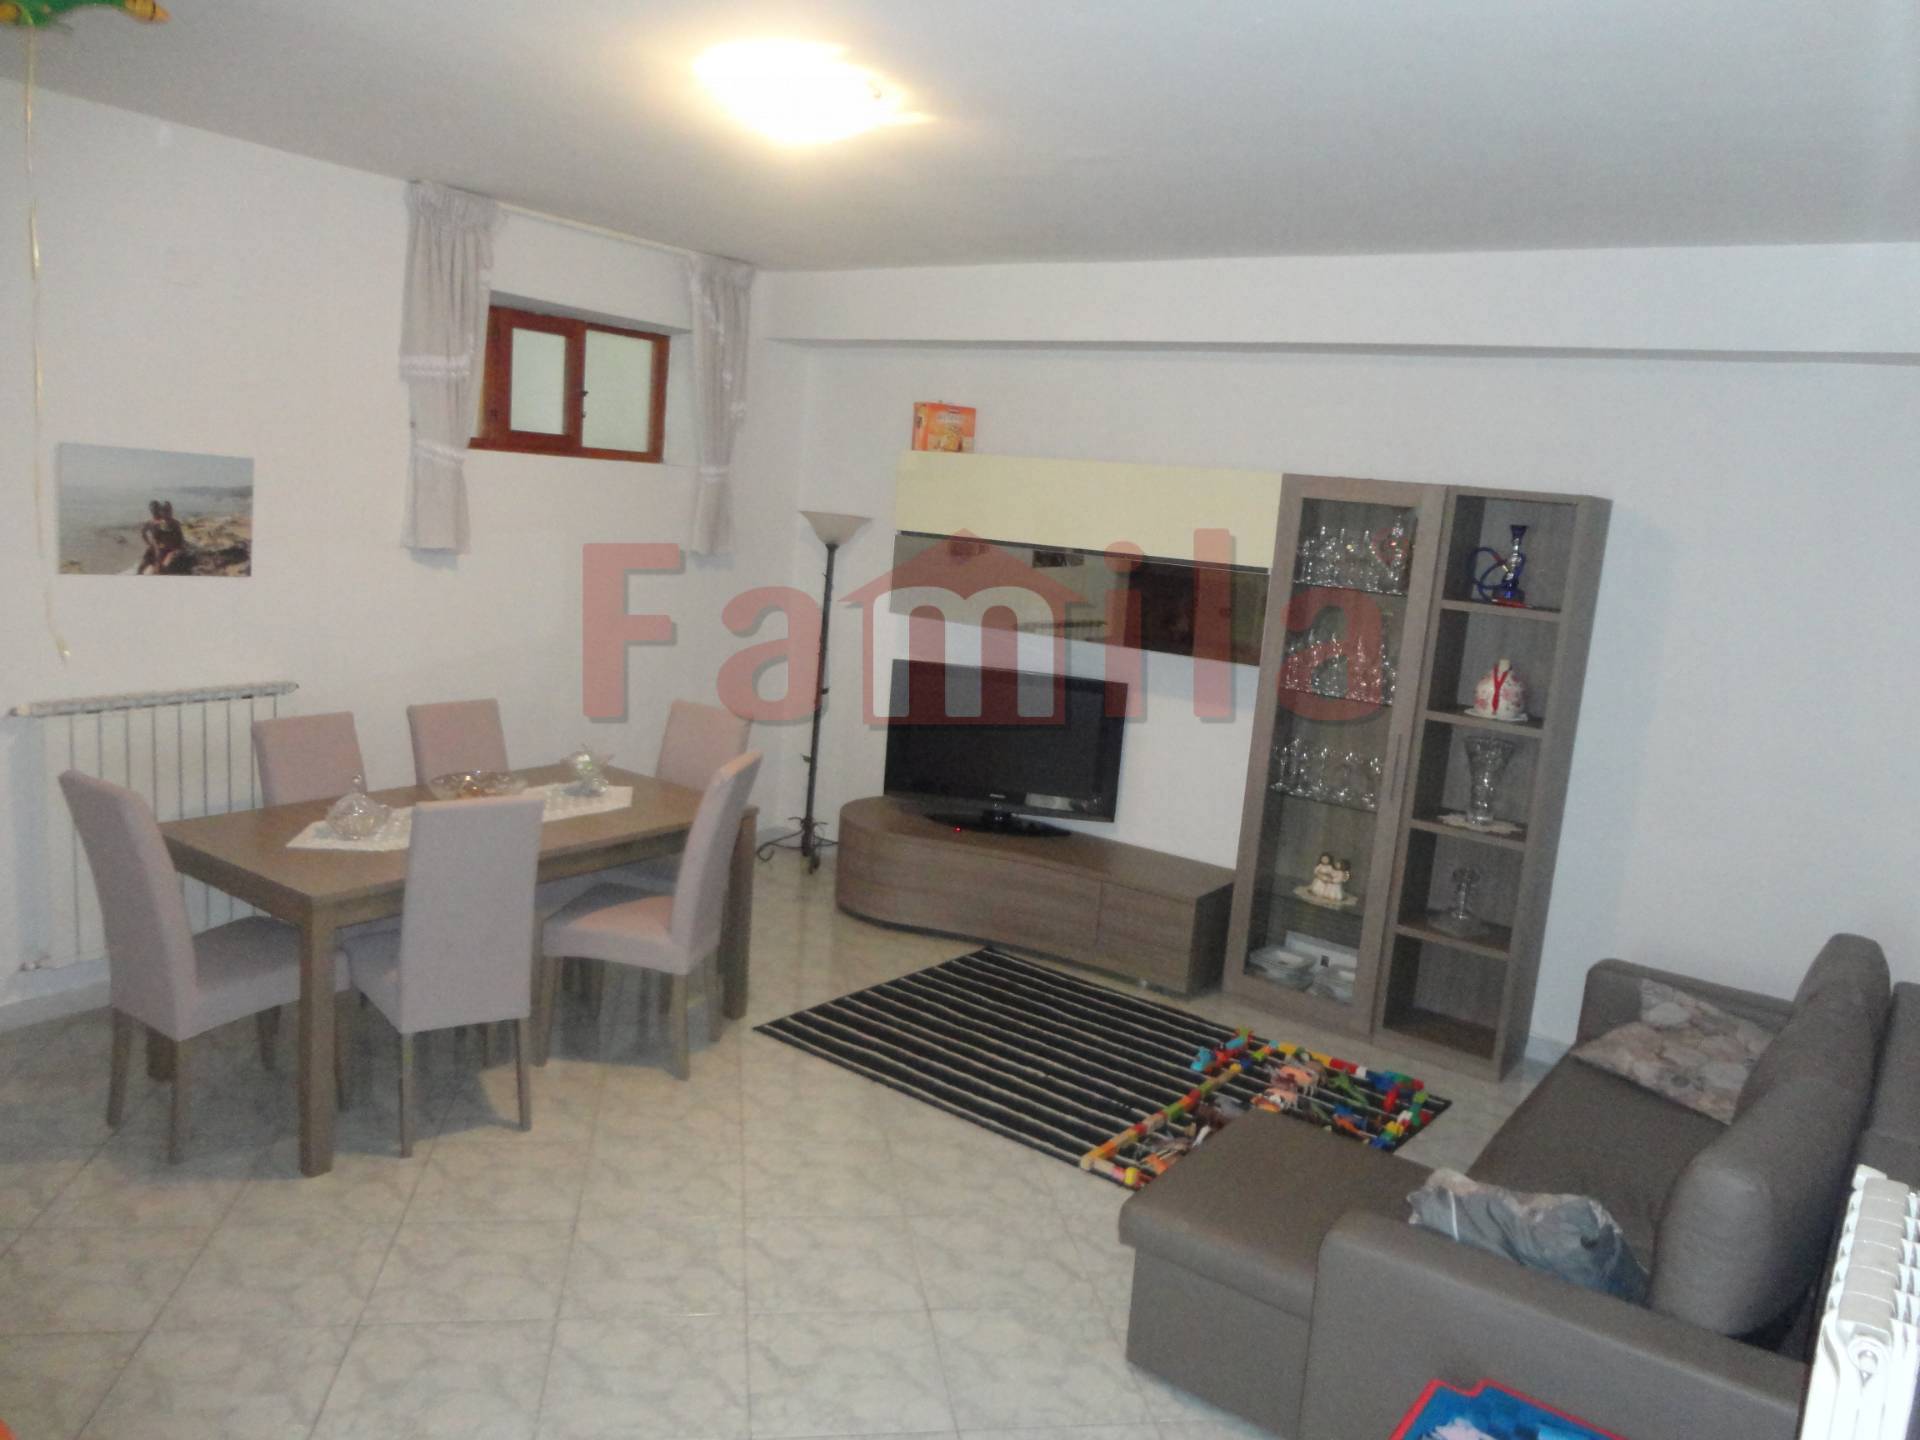 Appartamento in vendita a Sirignano, 3 locali, prezzo € 49.000 | CambioCasa.it